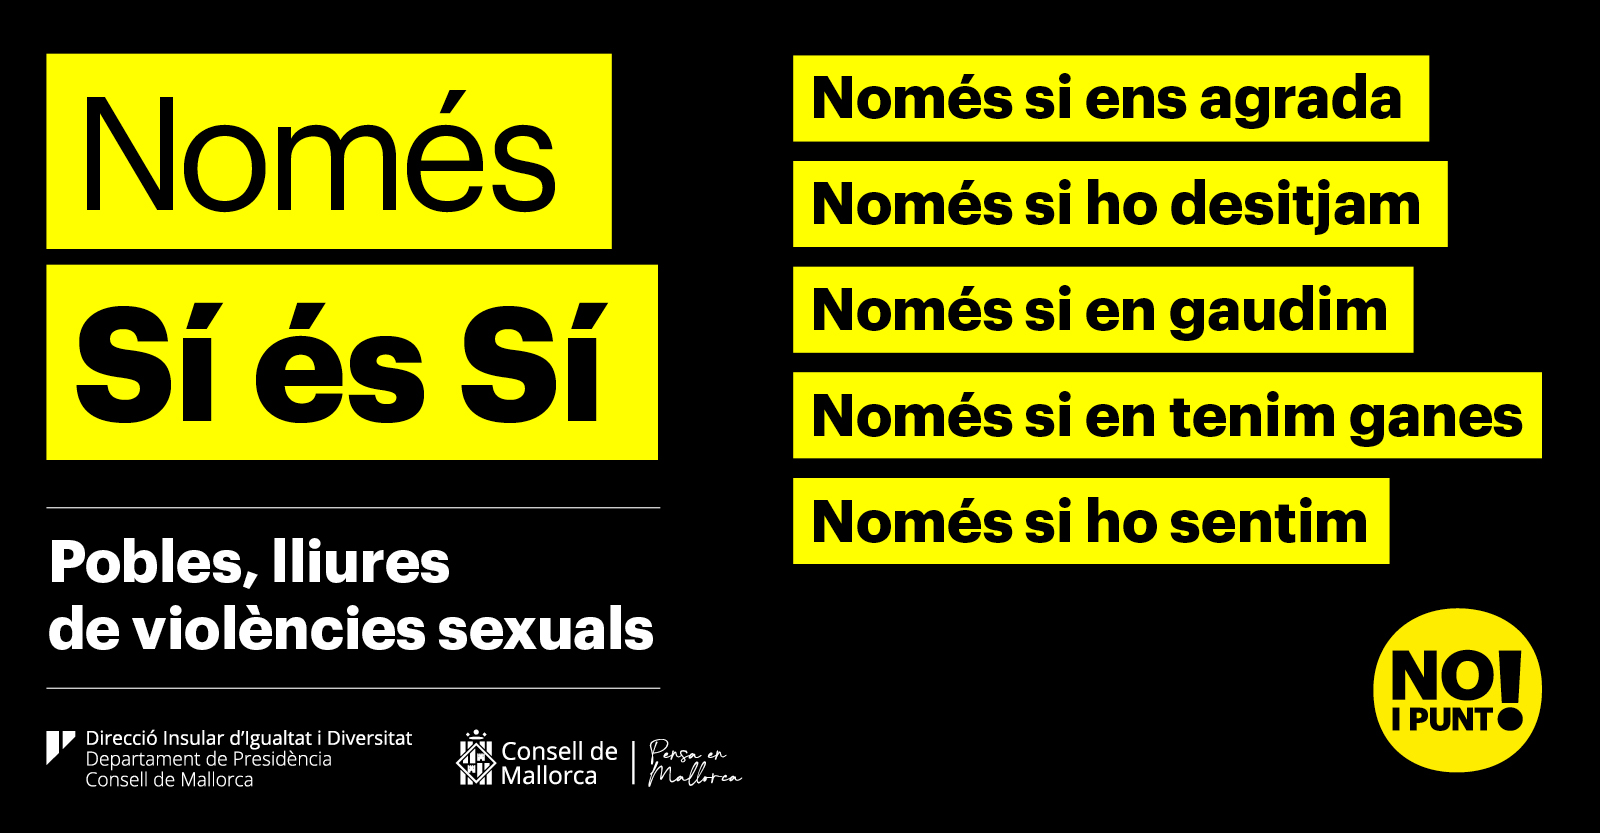 Cartel de la campaña «No i punt!»